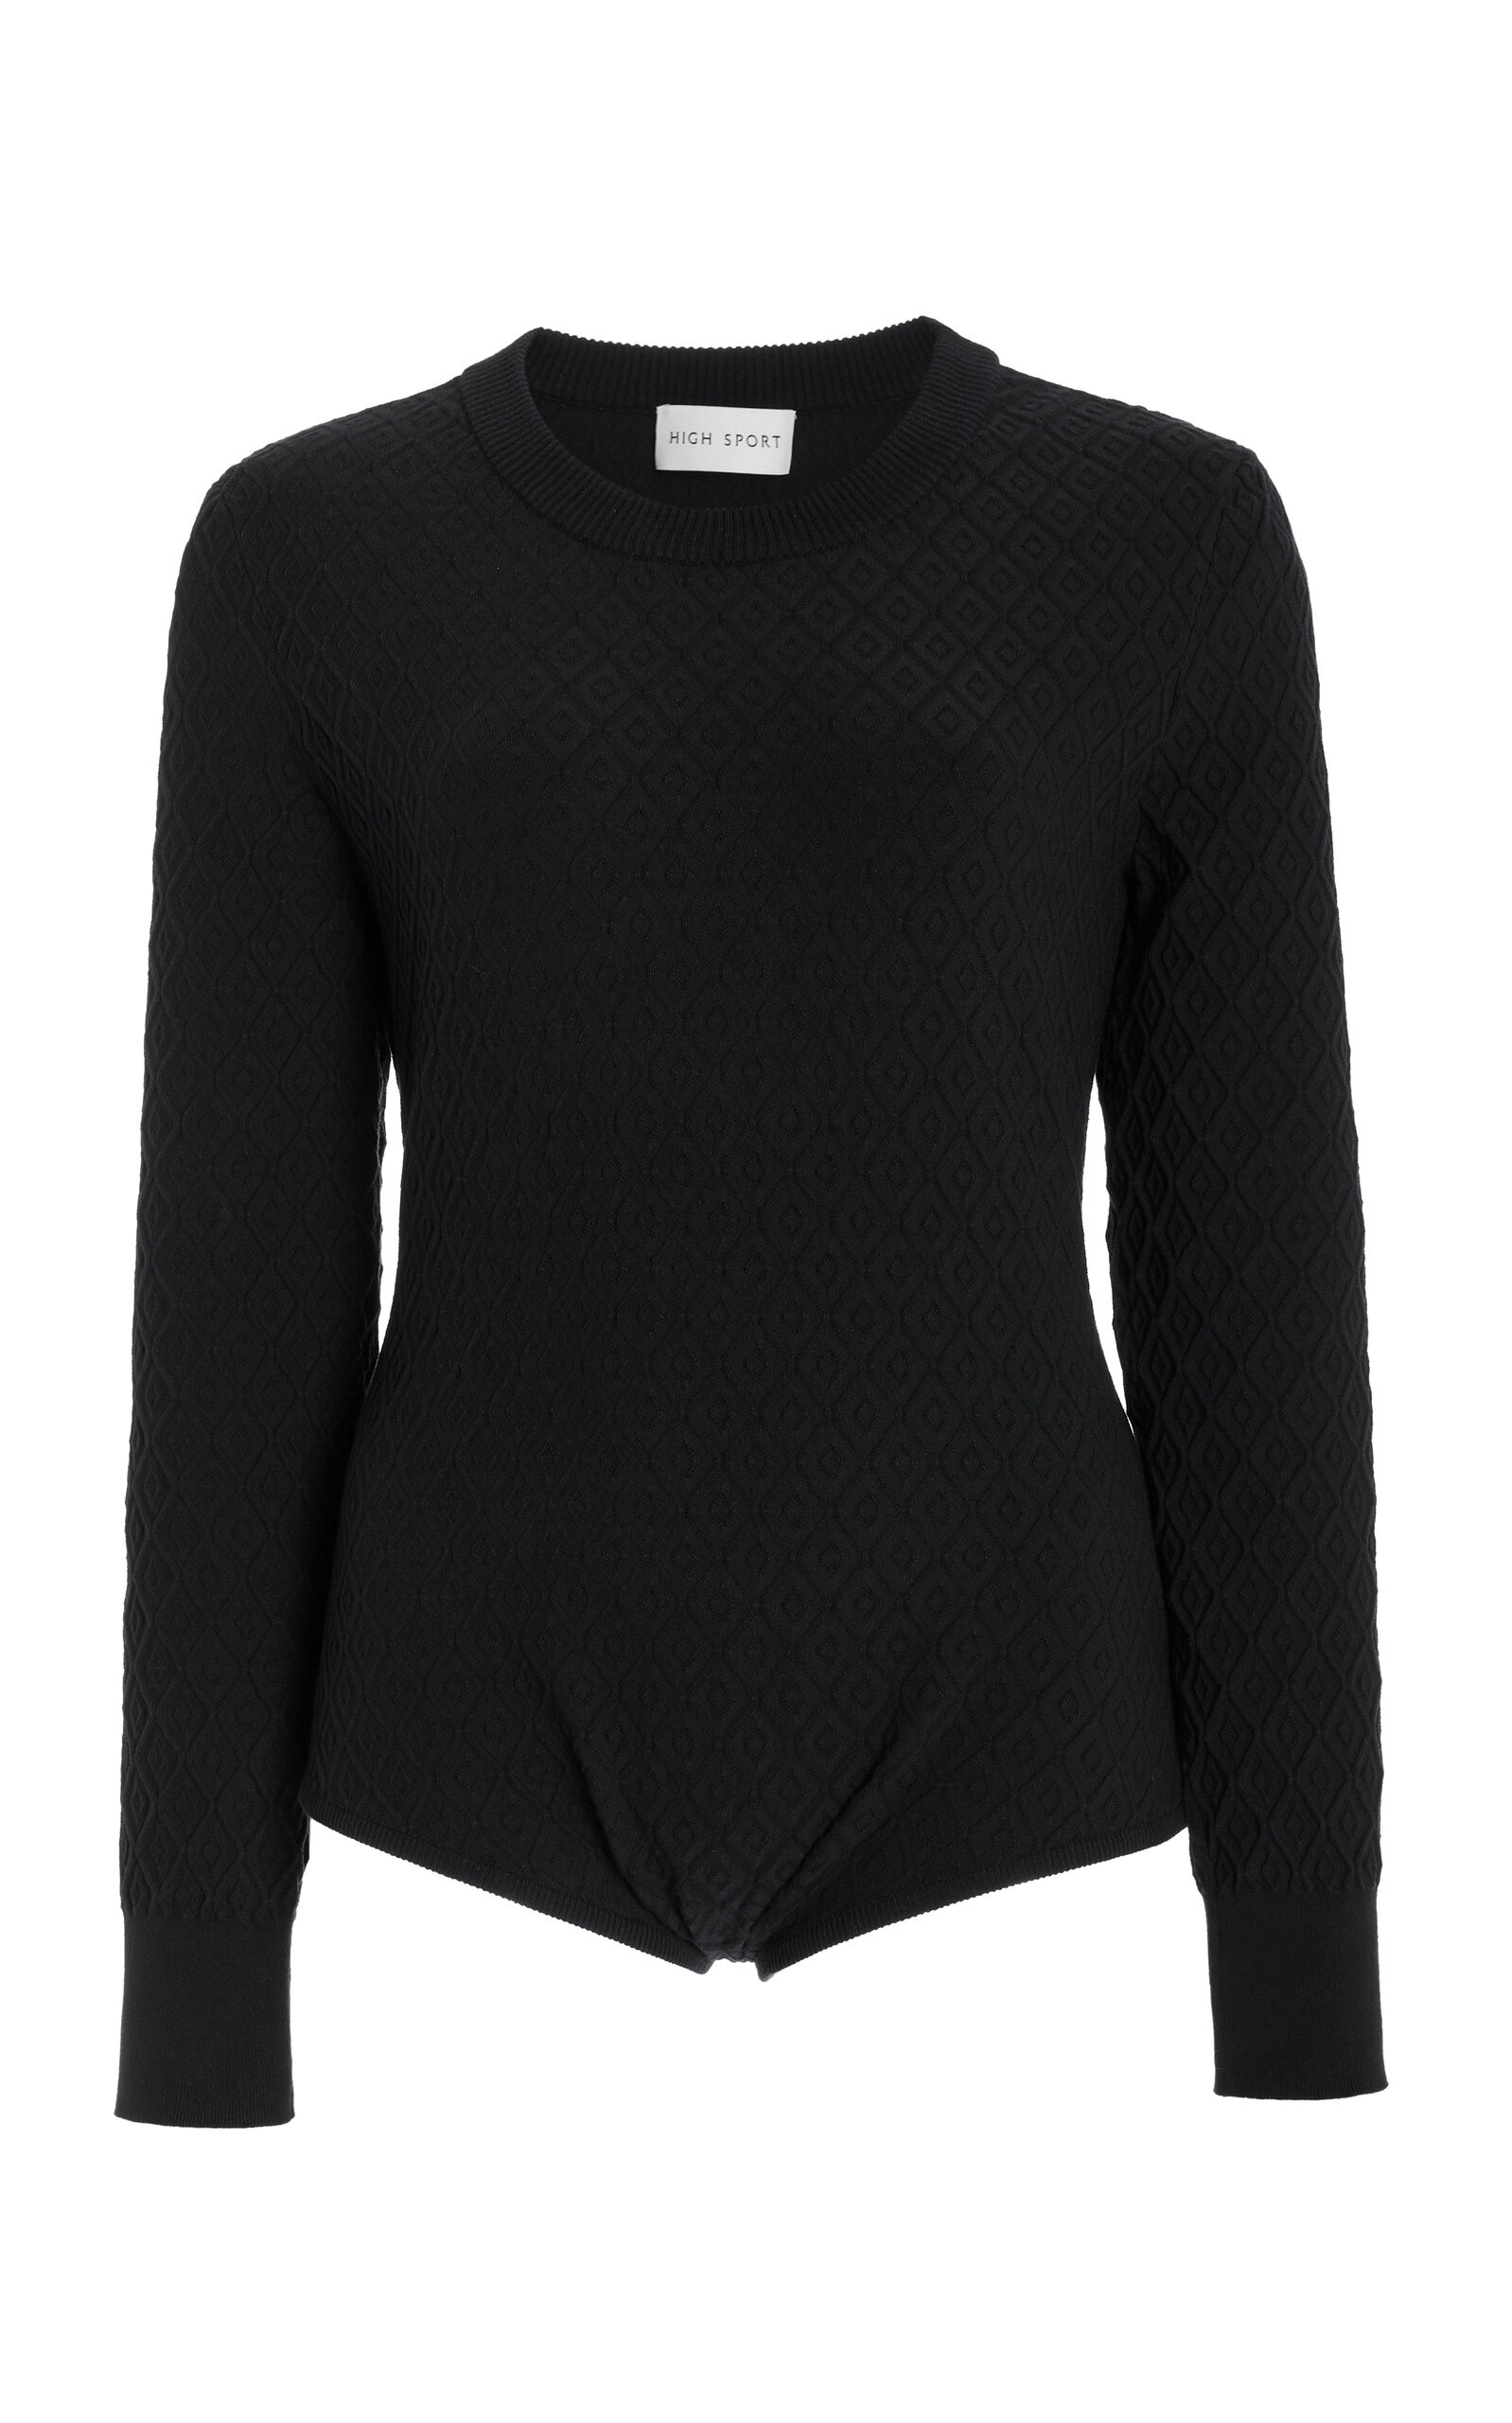 Exclusive Drane Knit Bodysuit black - 1